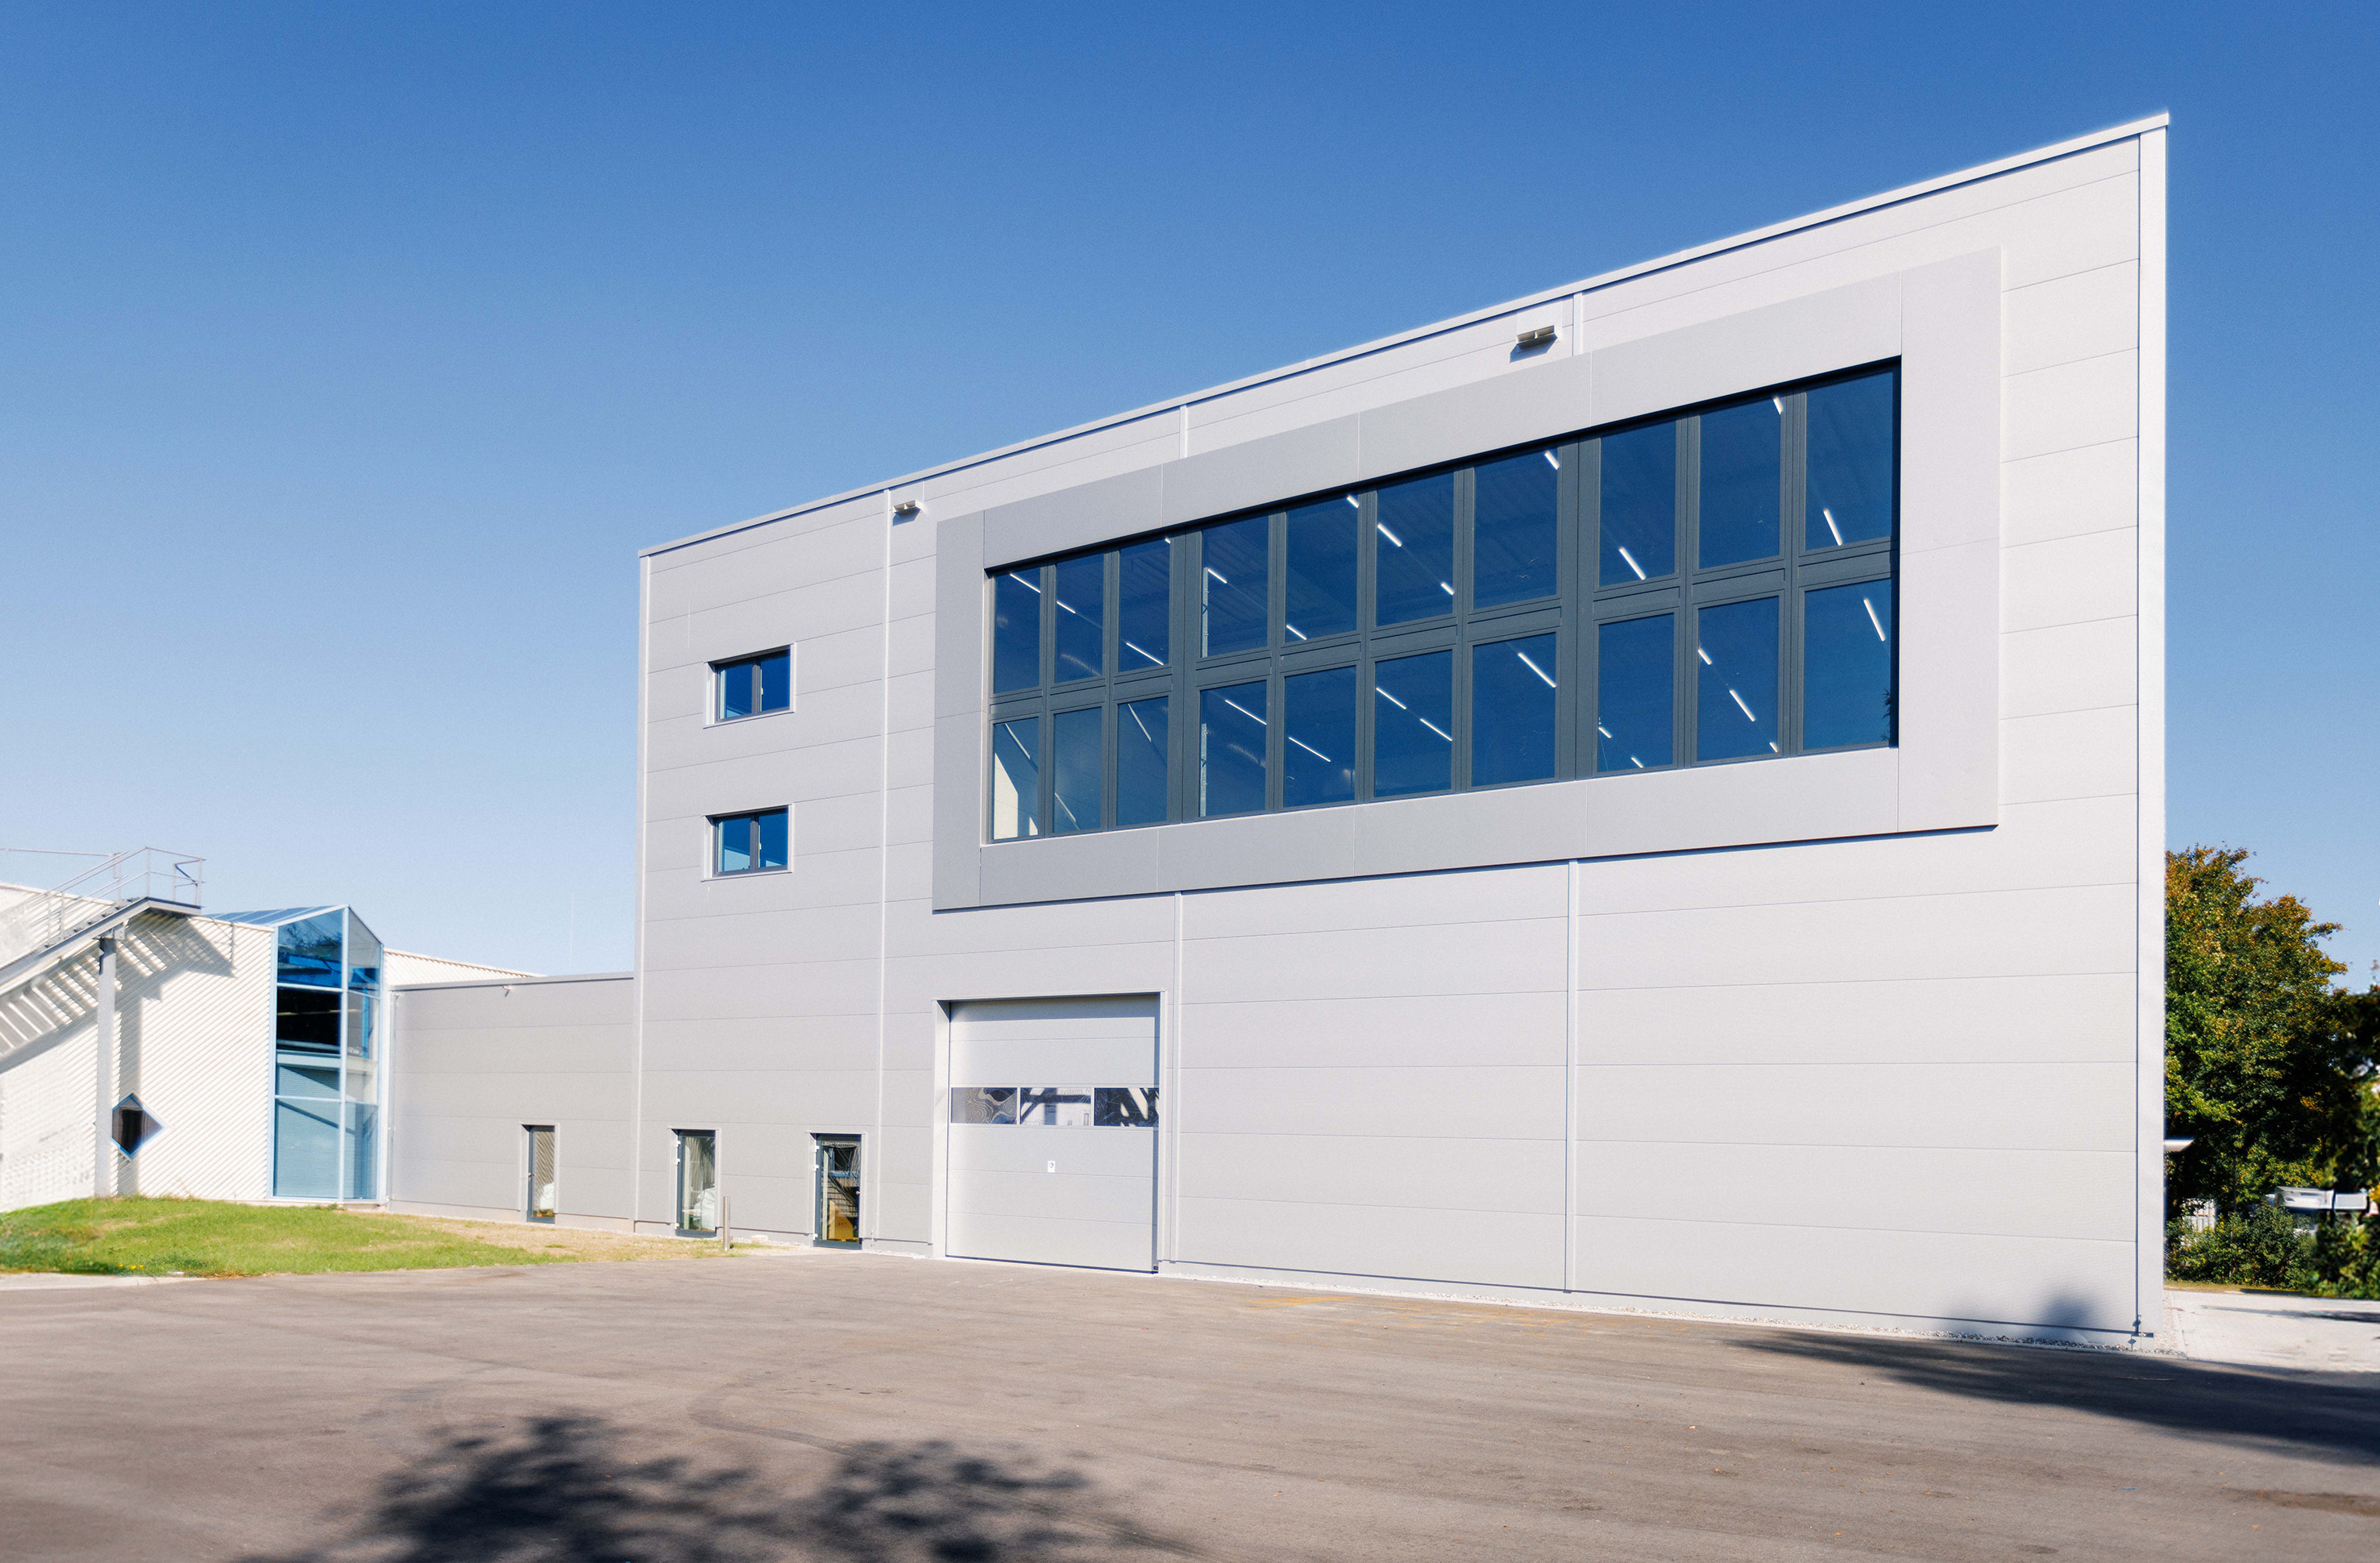 Das hochmoderne Coperion Recycling Innovation Center in Niederbiegen bei Weingarten hat <br />
seinen Betrieb erfolgreich aufgenommen.